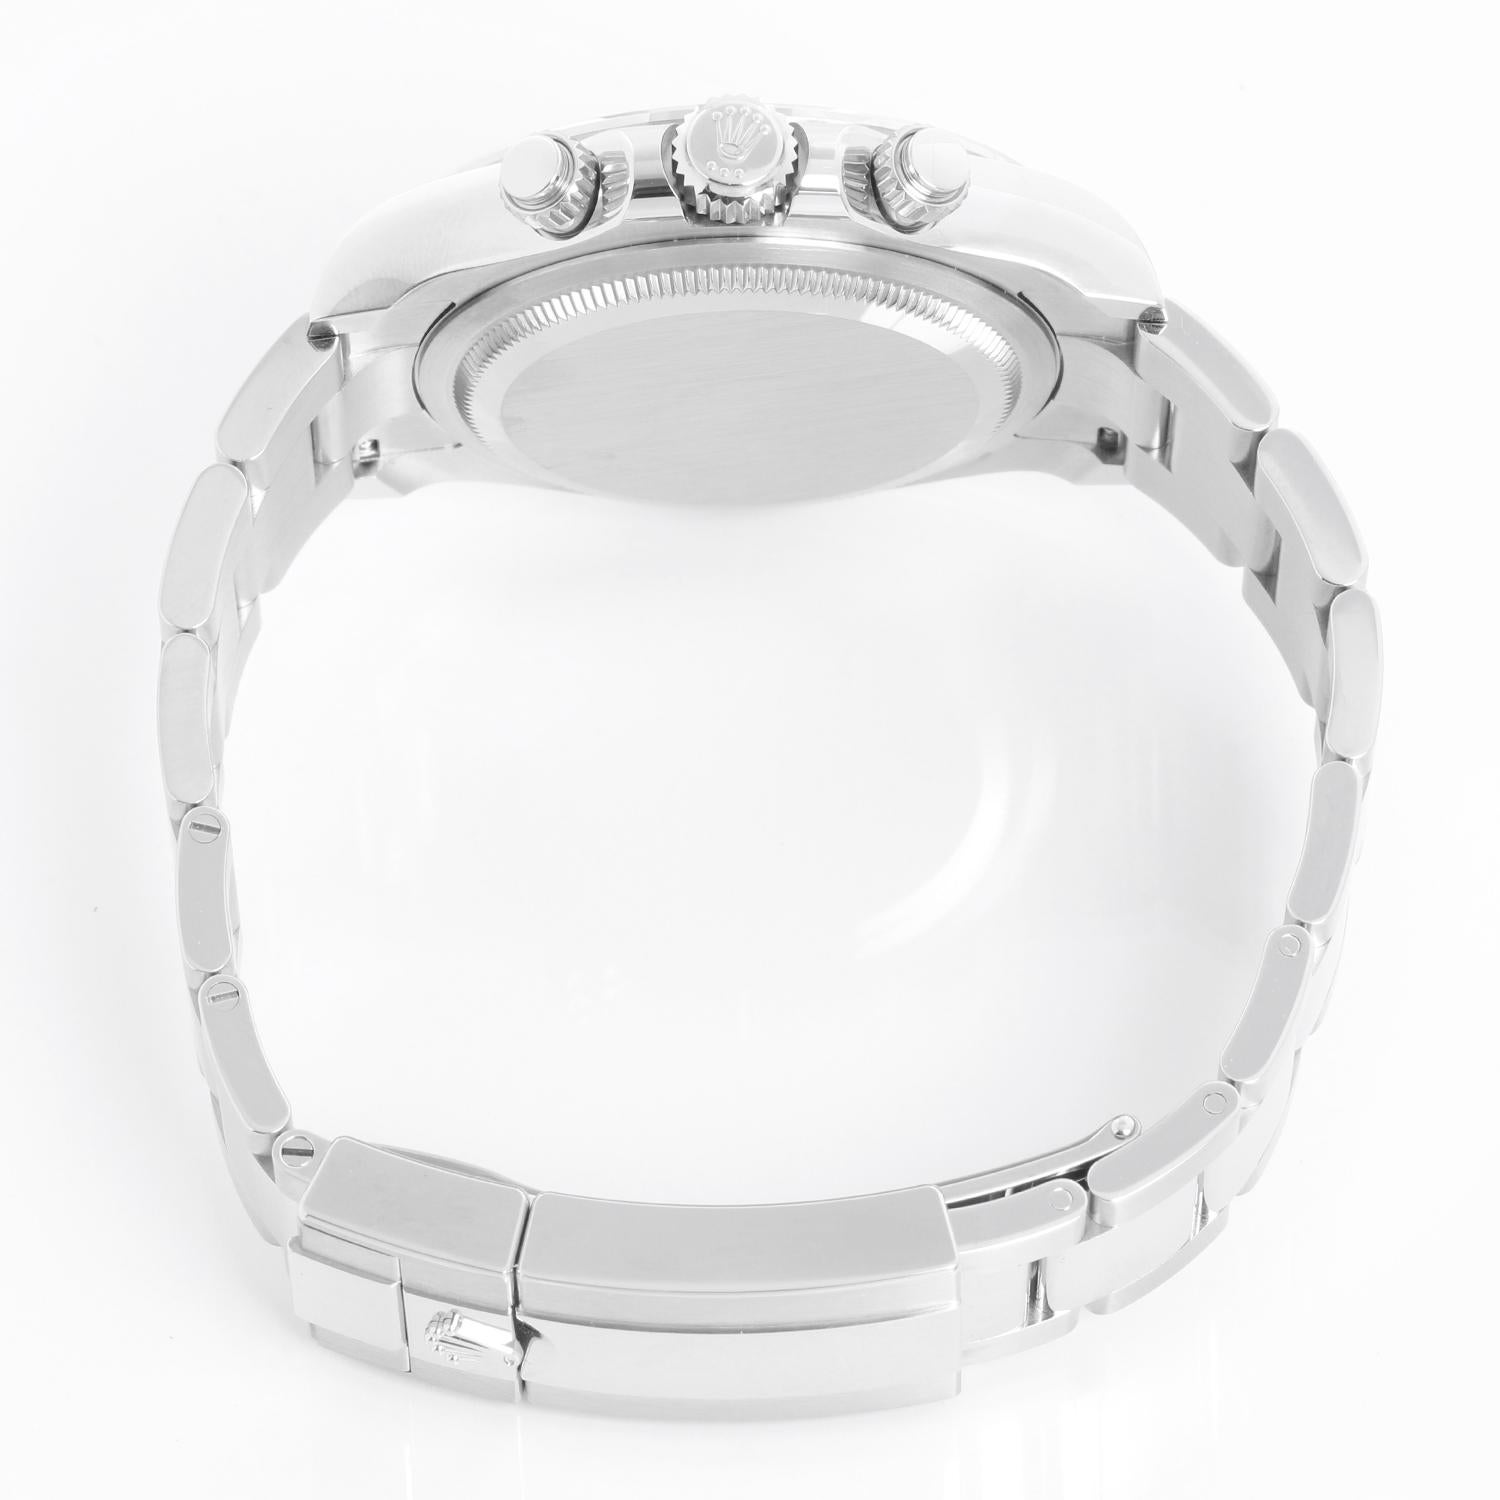  Montre Cosmograph Daytona 126500LN à cadran en céramique blanche de Rolex Pour hommes 